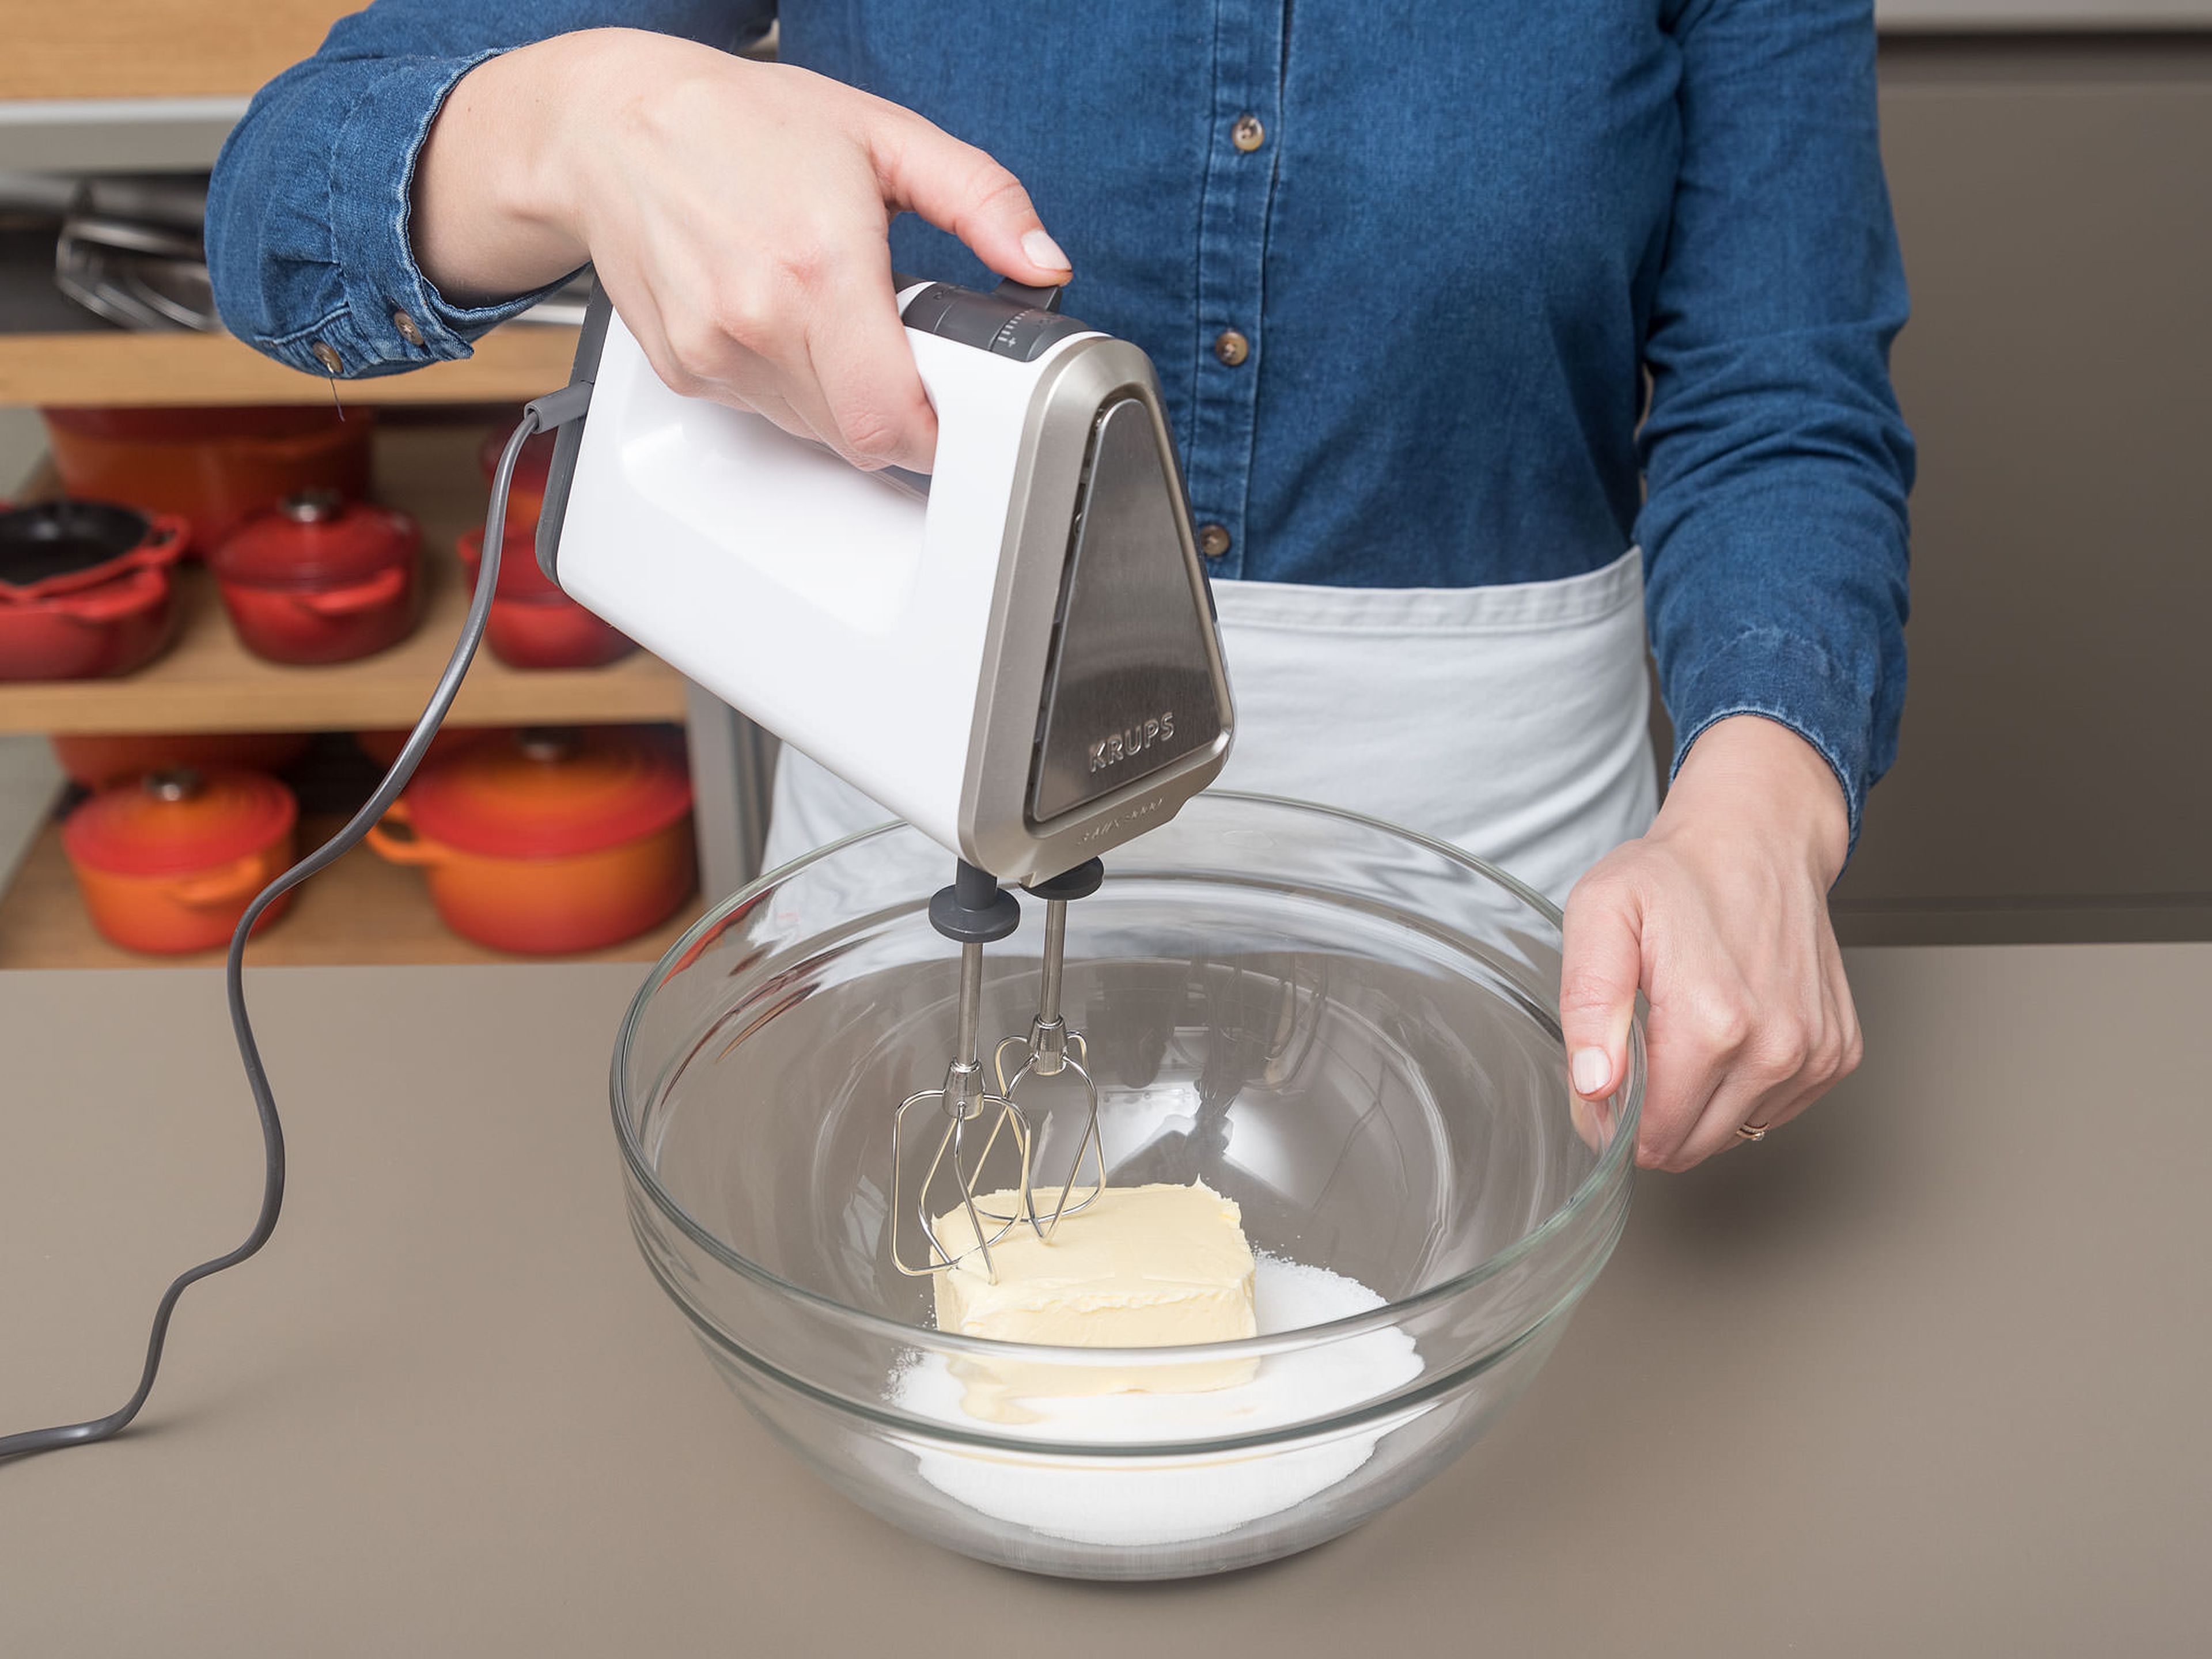 Vanilleschote aufschneiden und auskratzen. Mehl, Backpulver, Salz und Vanillemark verrühren. In einer separaten Schüssel oder der Schüssel einer Küchenmaschine Butter und Zucker aufschlagen, bis die Masse schaumig ist. Eier einzeln hinzugeben und verrühren. Mehl-Mischung unterrühren bis ein einheitlicher Teig entsteht.